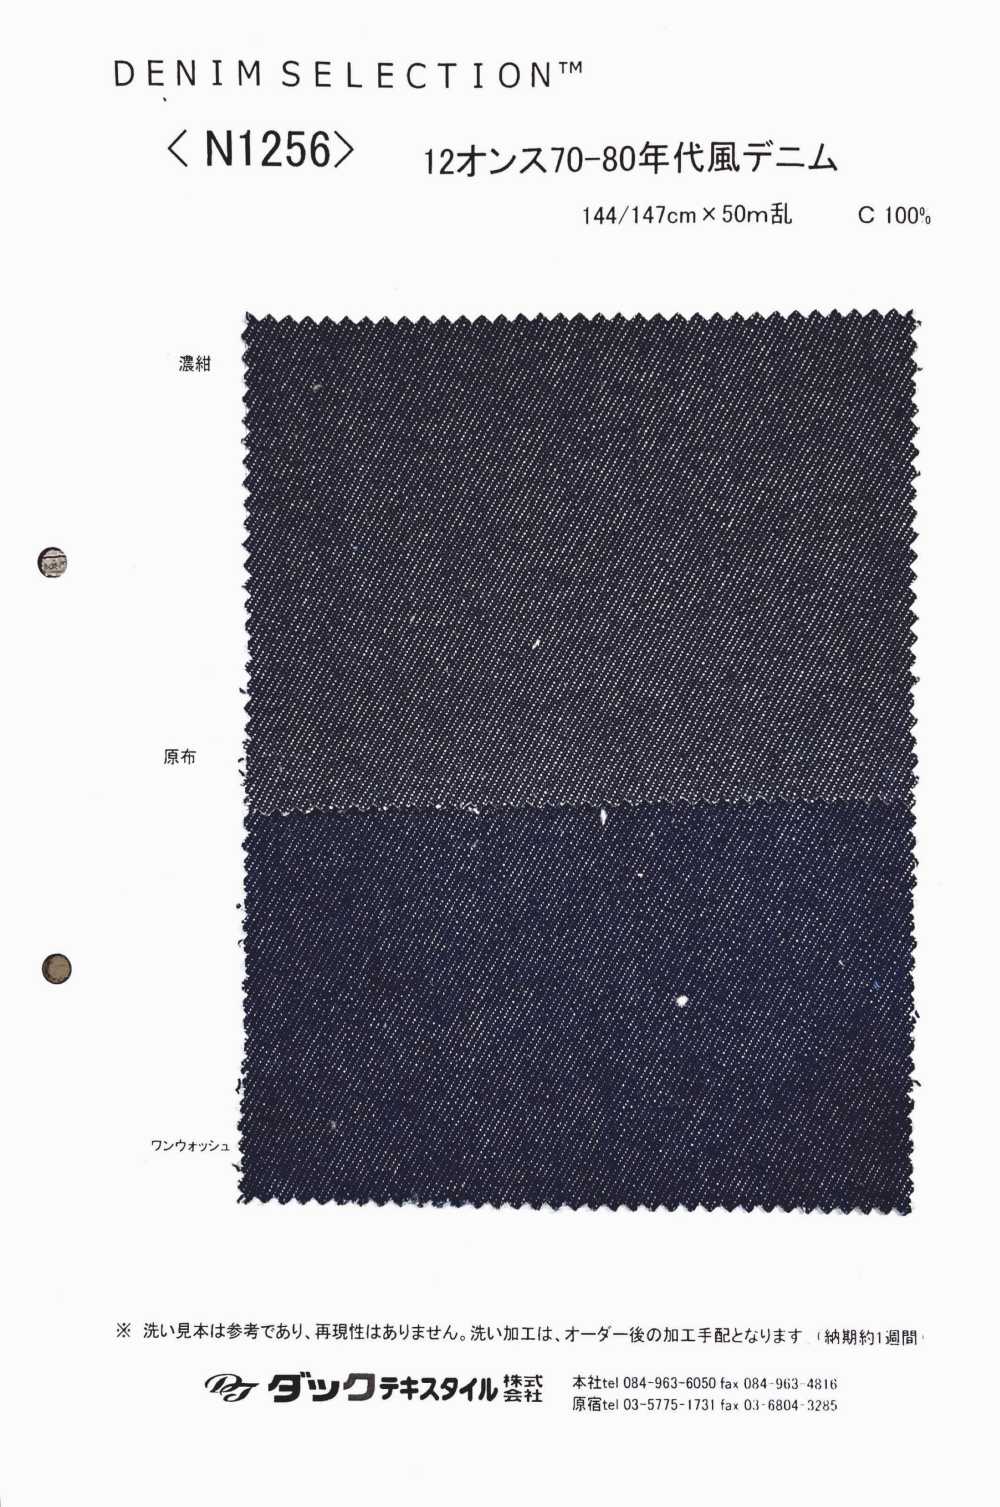 N1256 12 Oz 70s-80s Denim[Textile / Fabric] DUCK TEXTILE